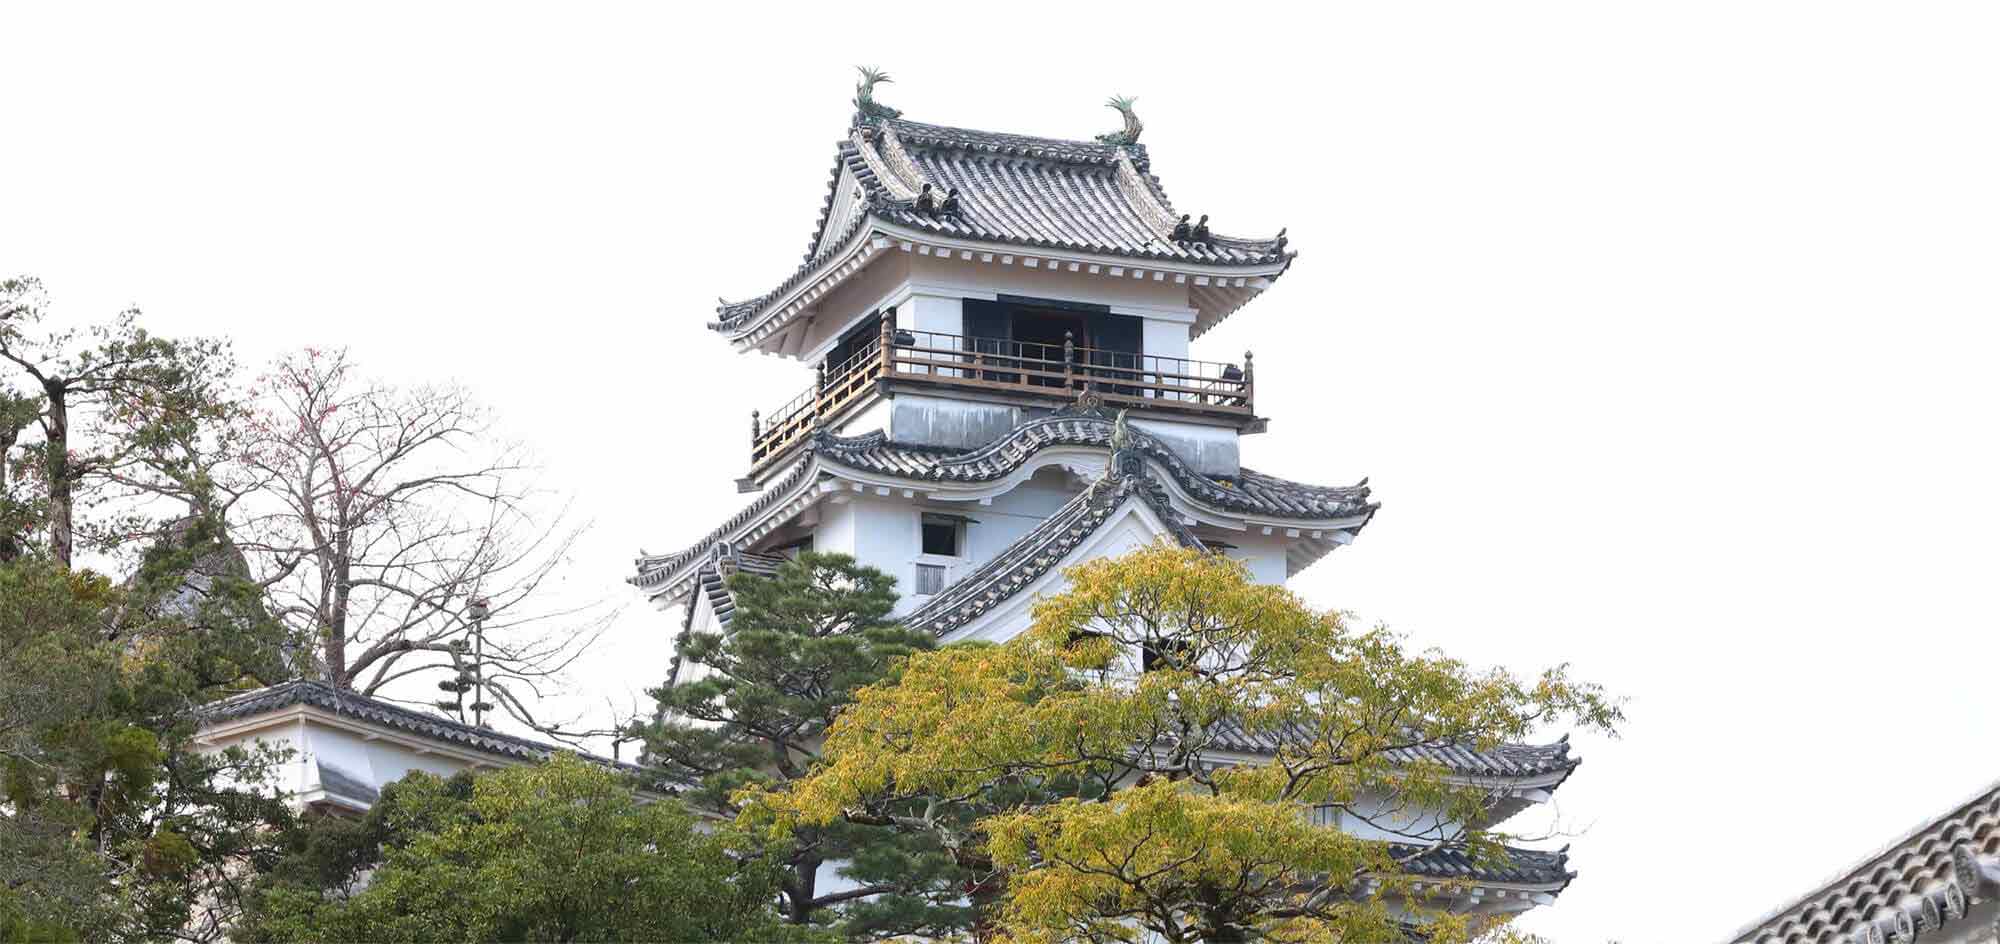 Kochi-jo Castle image